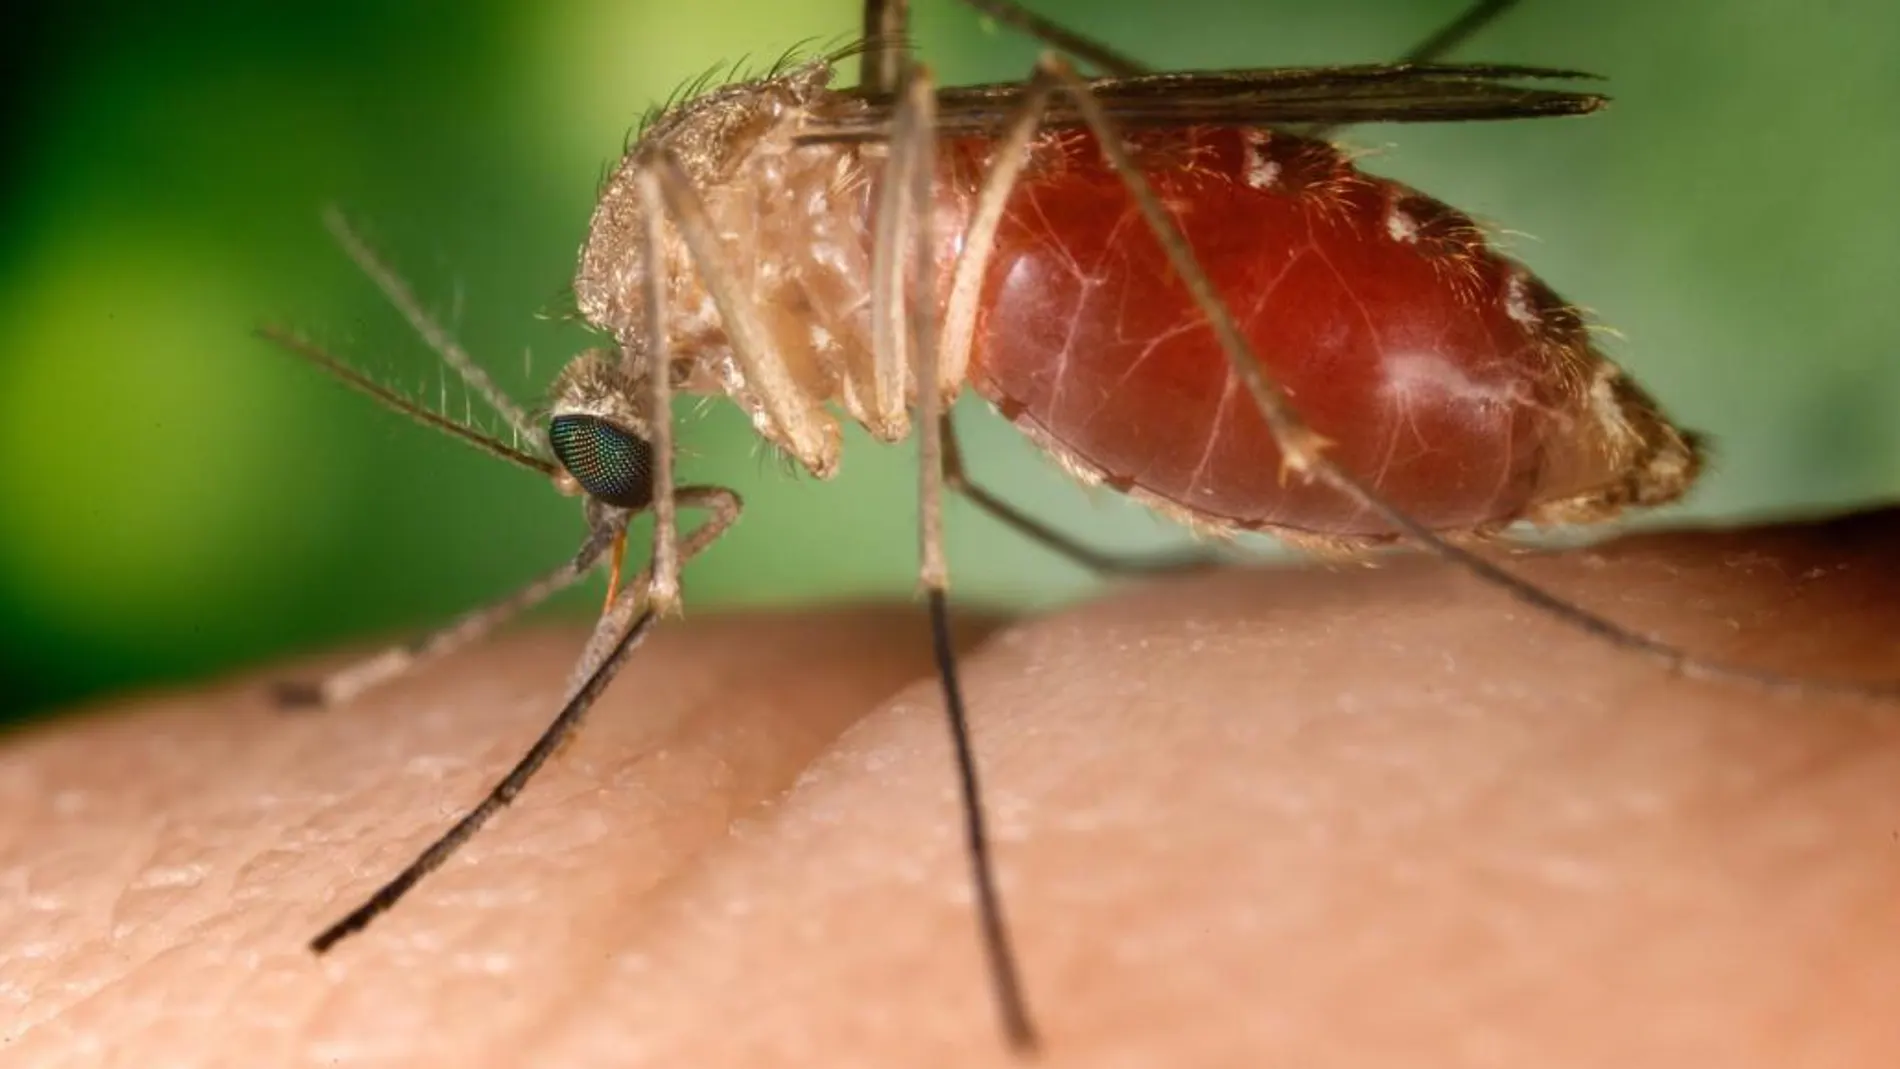 Los mosquitos suelen sentirse atraídos por la ropa de colores oscuros